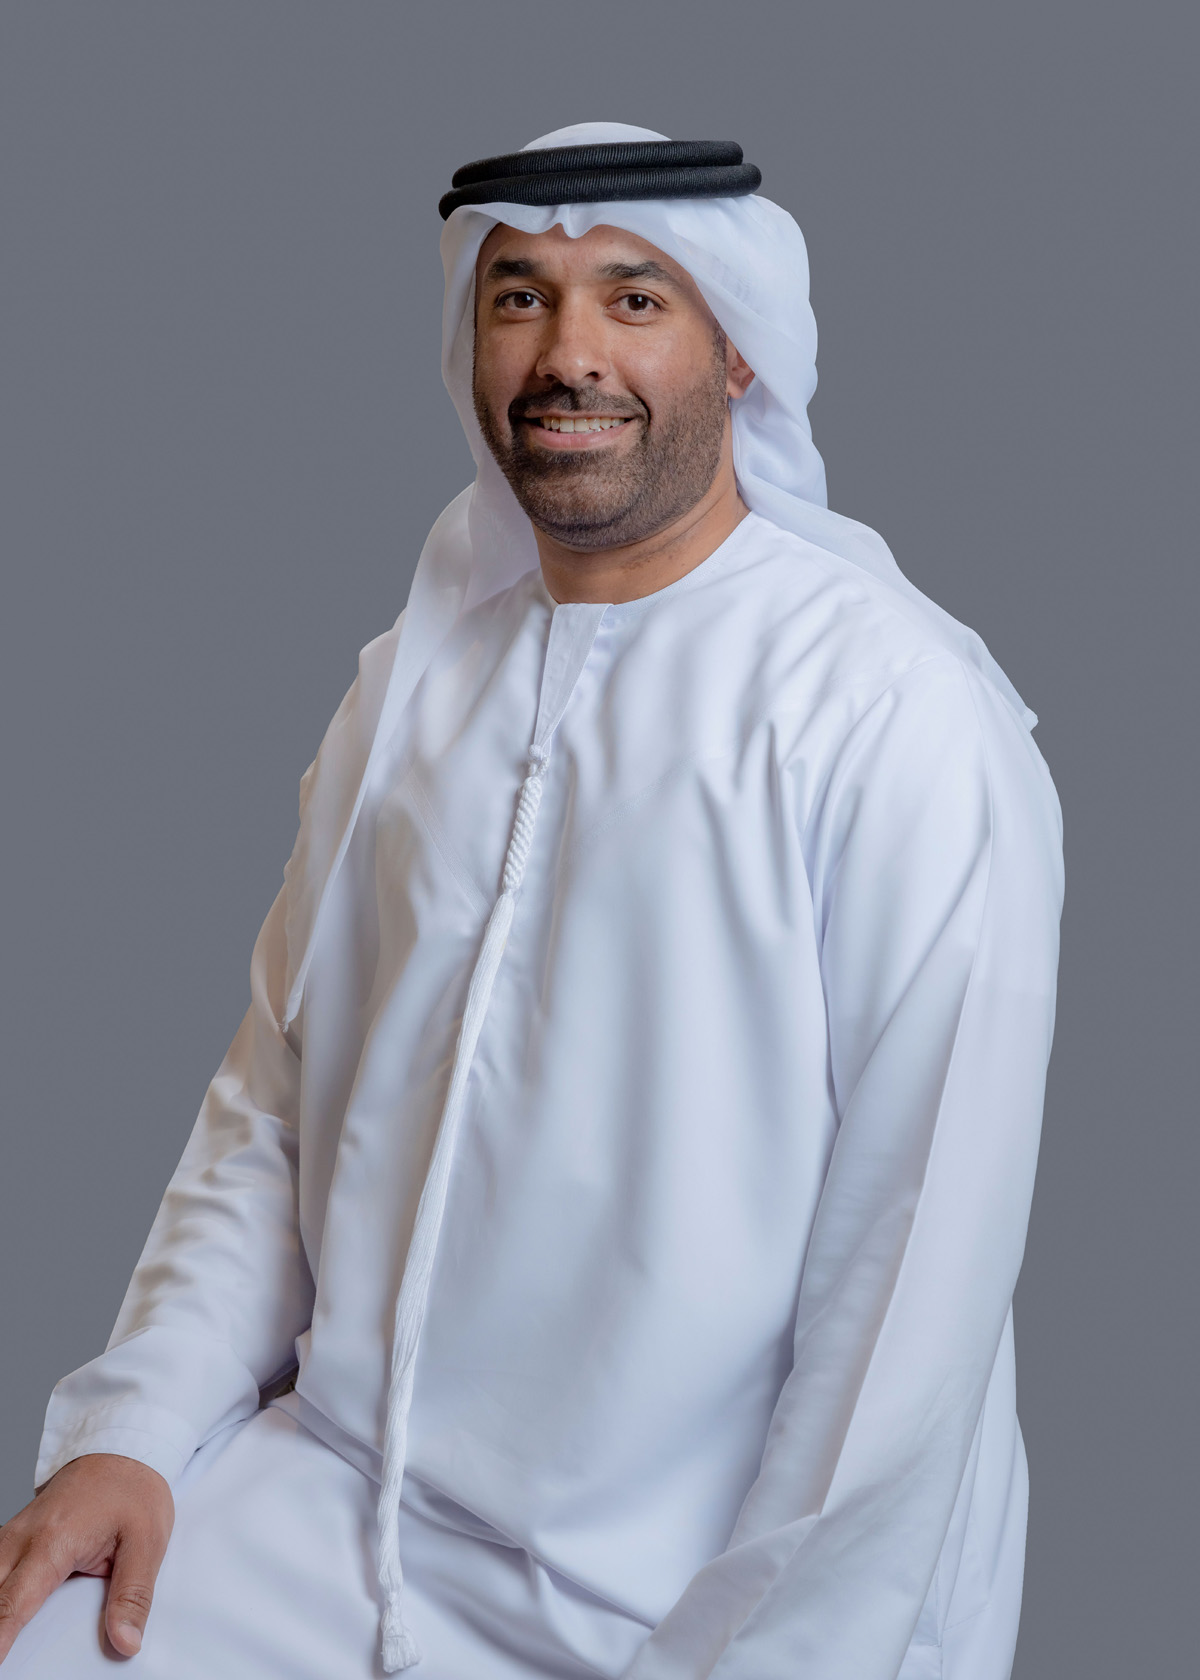 Ahmed Saeed Al Suwaidi